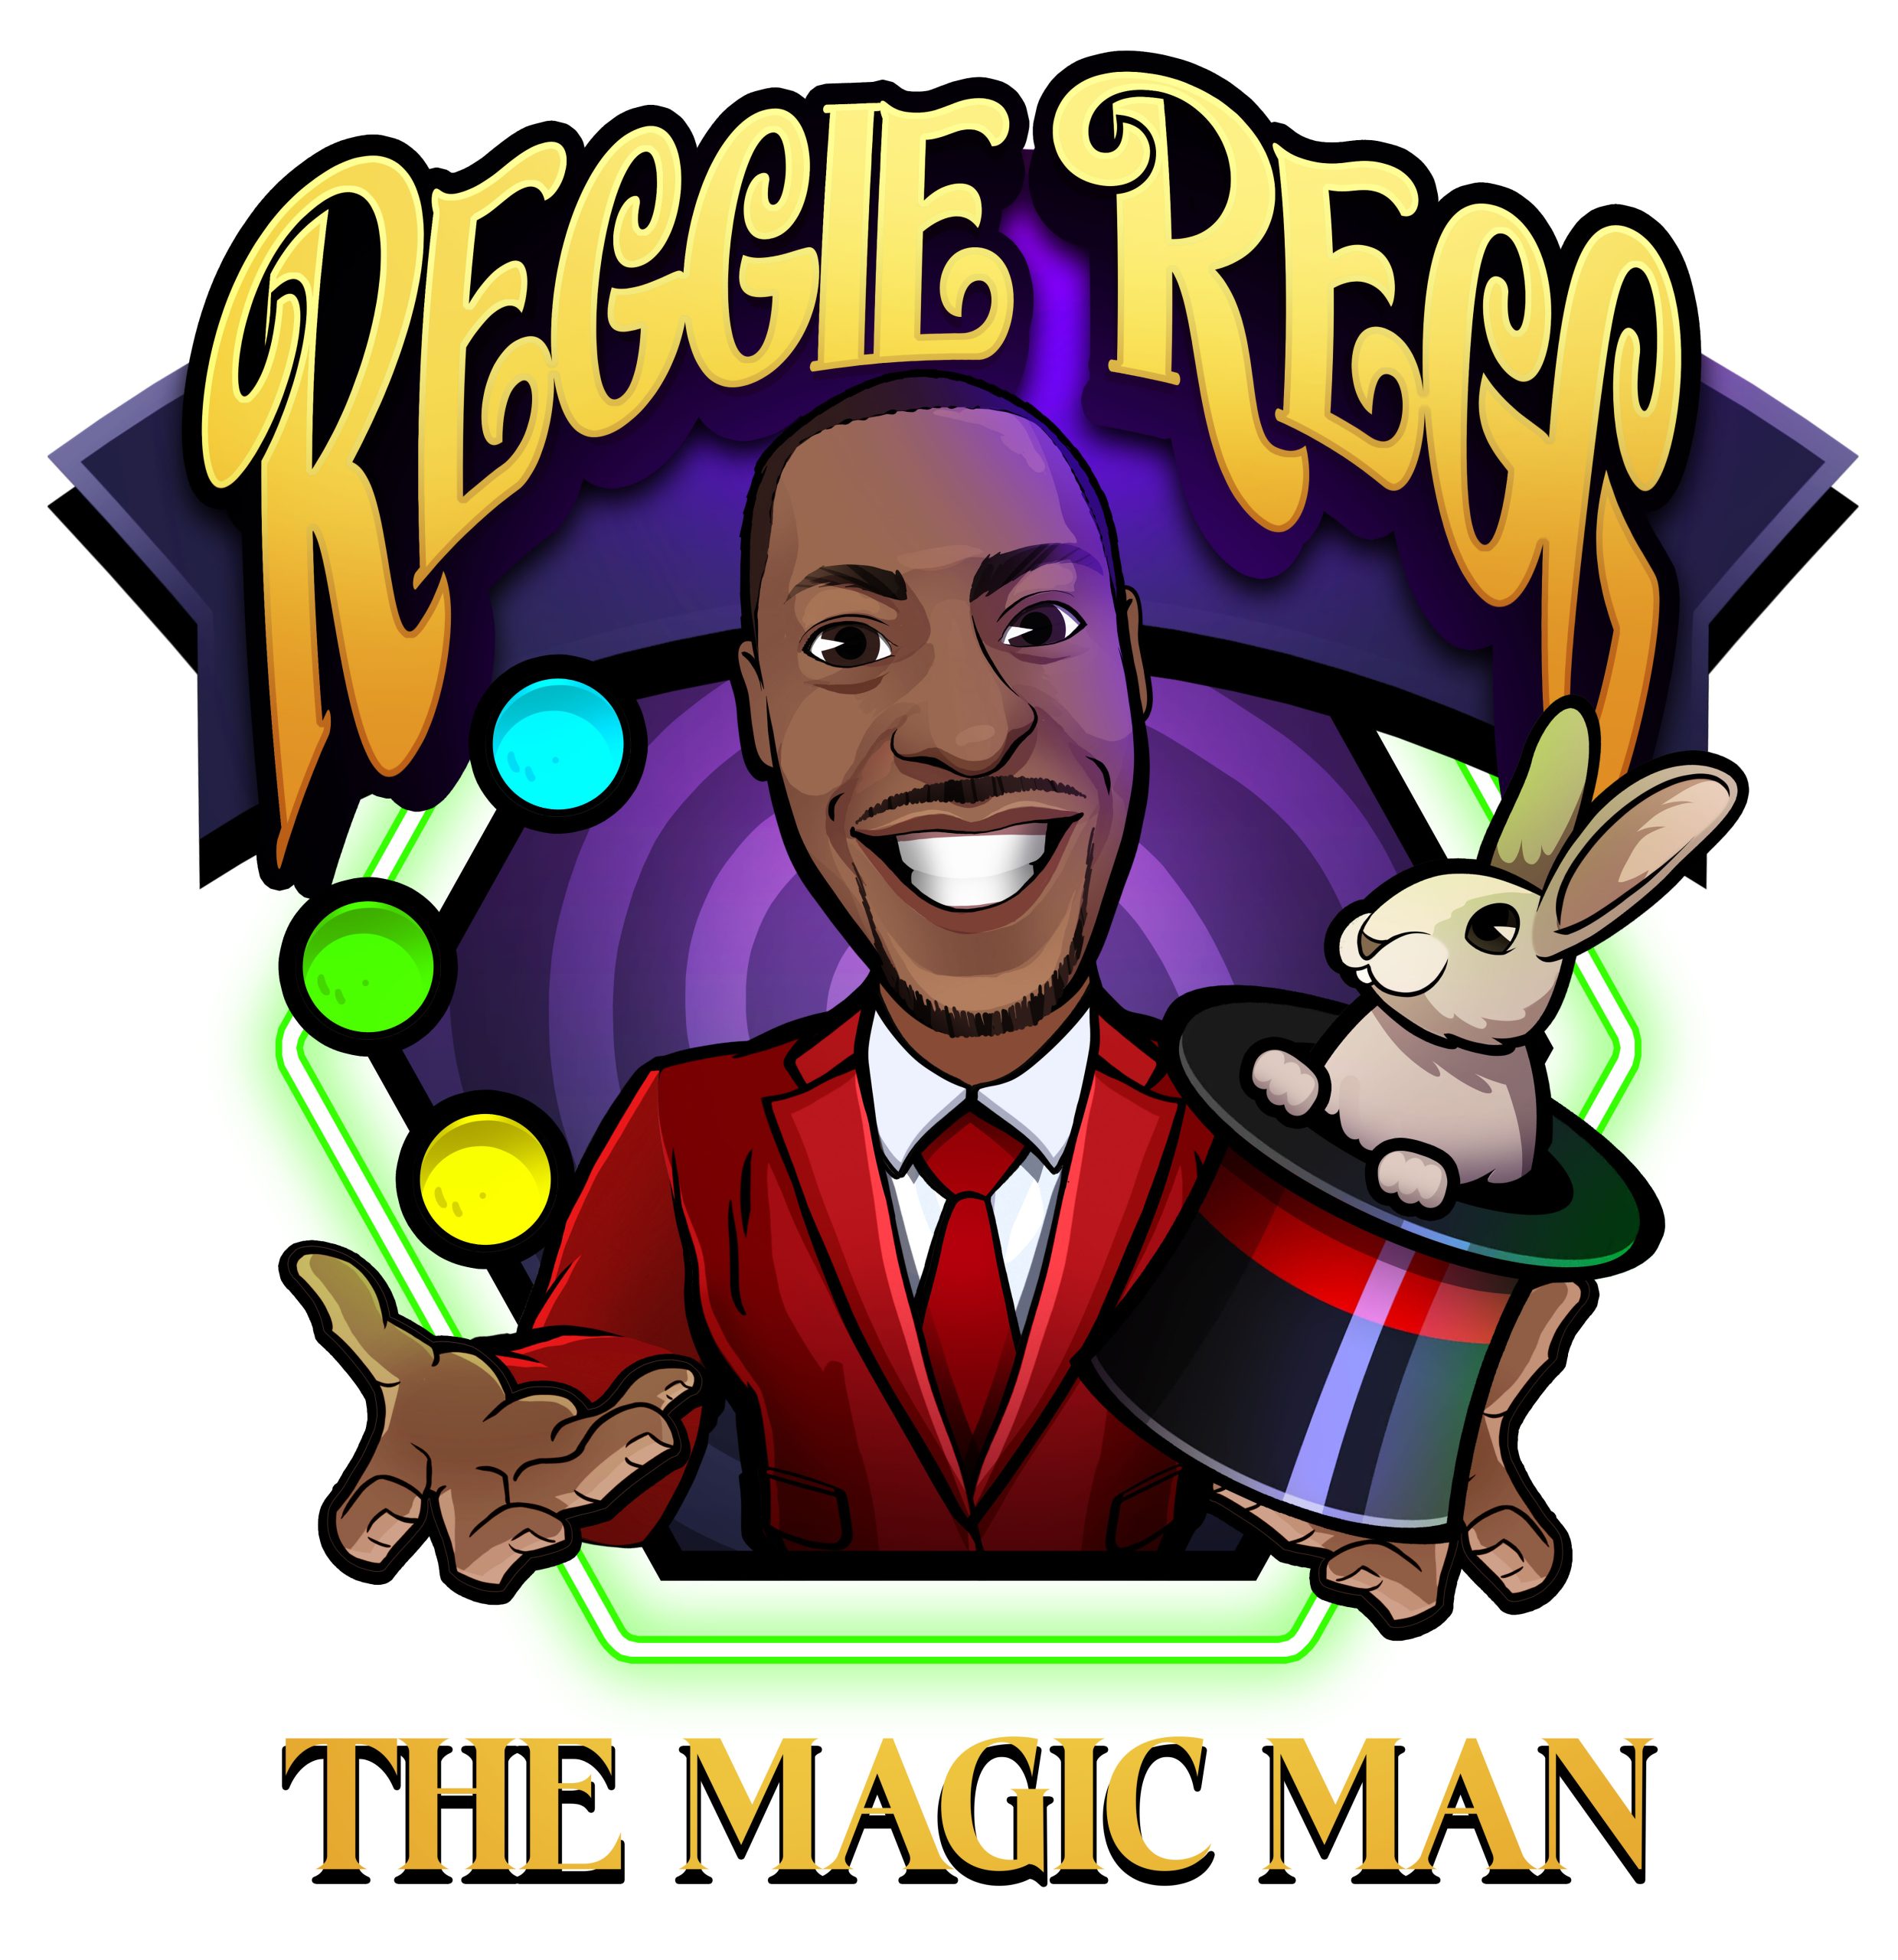 Reggie Regg The Magic Man